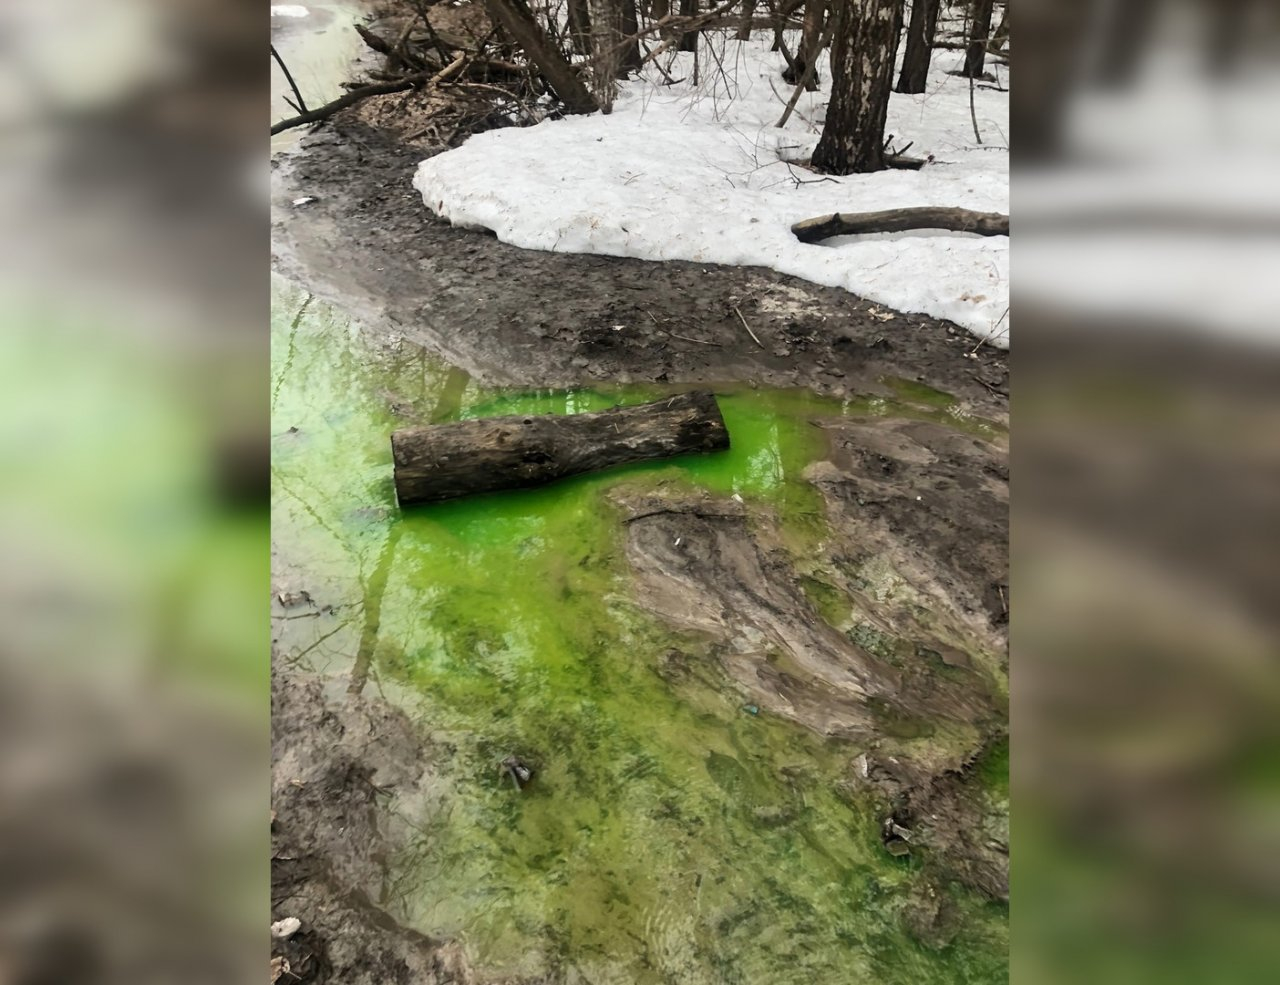 4 снимка кислотно-зеленой реки в Нижегородской области, шокировавших Сеть